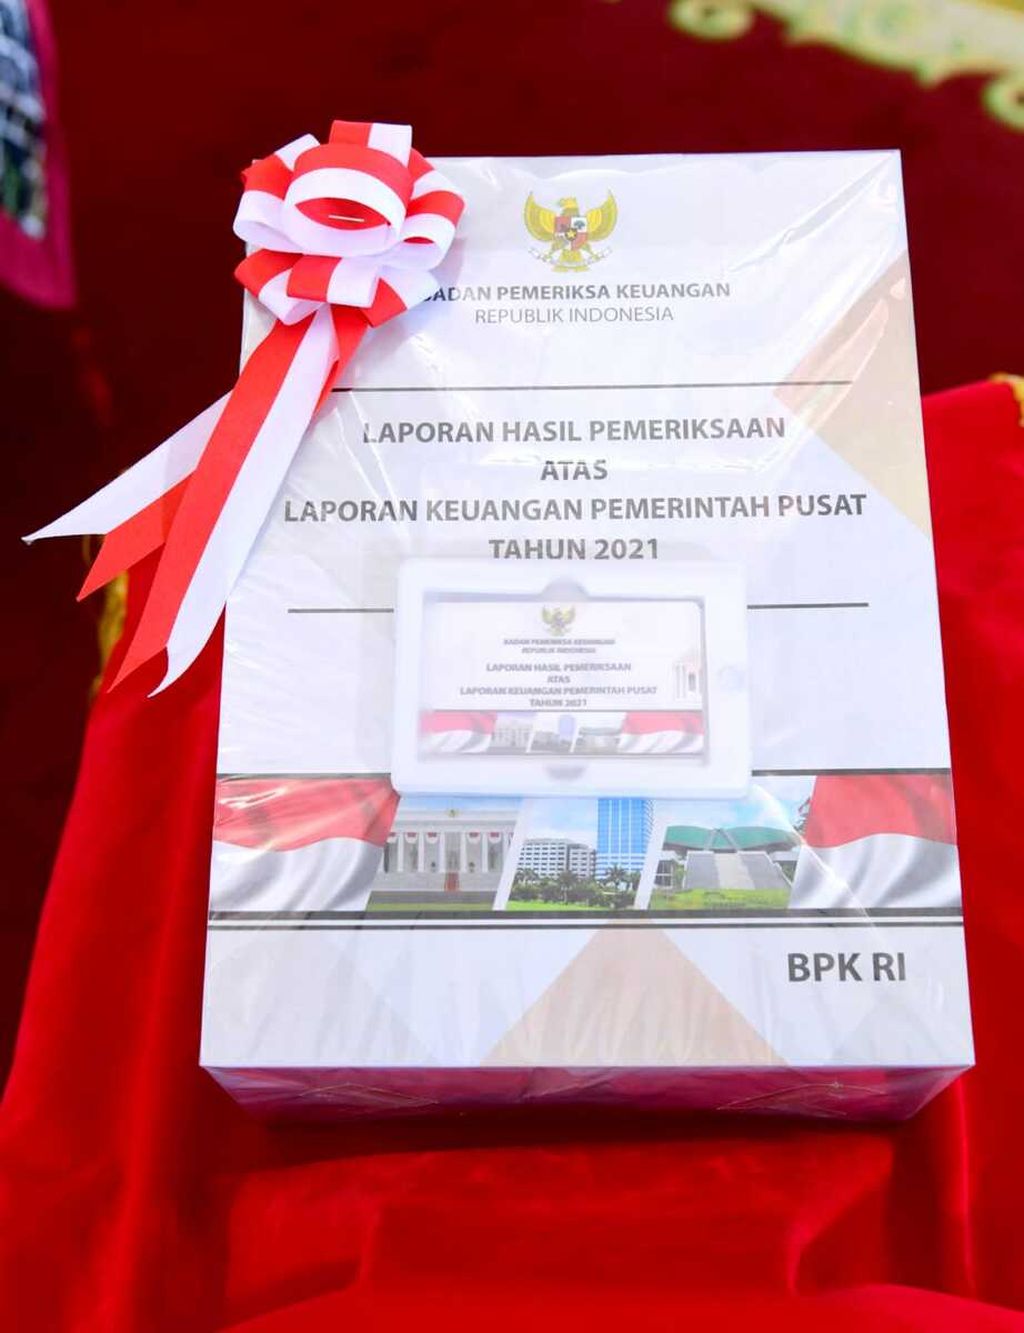 Laporan Hasil Pemeriksaan atas Laporan Keuangan Pemerintah Pusat Tahun 2021 dari Badan Pemeriksa Keuangan yang diserahkan keada Presiden Joko Widodo di Istana Kepresidenan Bogor, Jawa Barat, Kamis (23/6/2022).